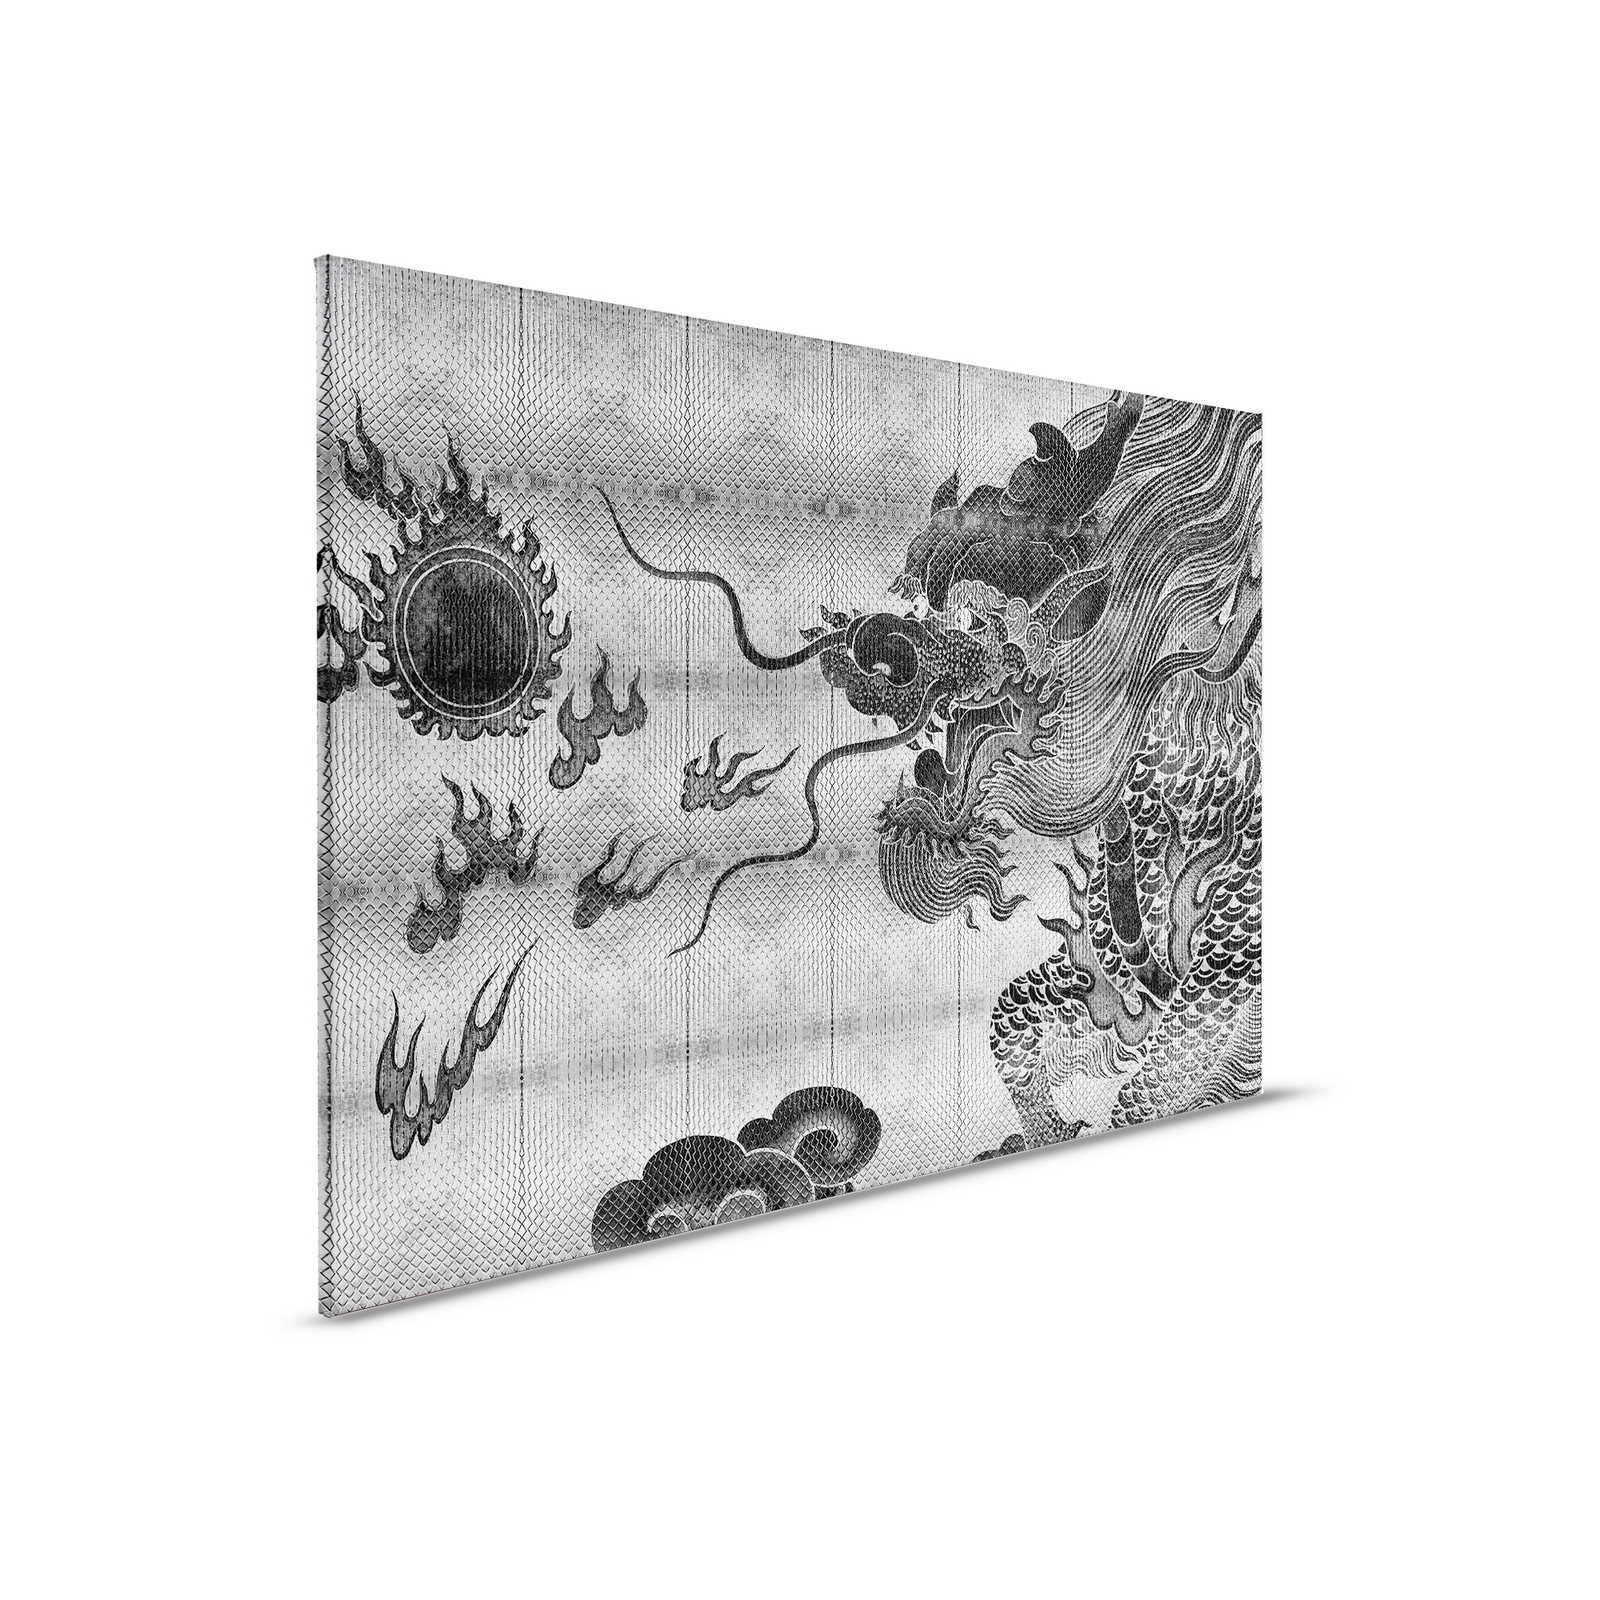 Shenzen 3 - Pittura su tela con drago argento metallizzato in stile asiatico - 0,90 m x 0,60 m
